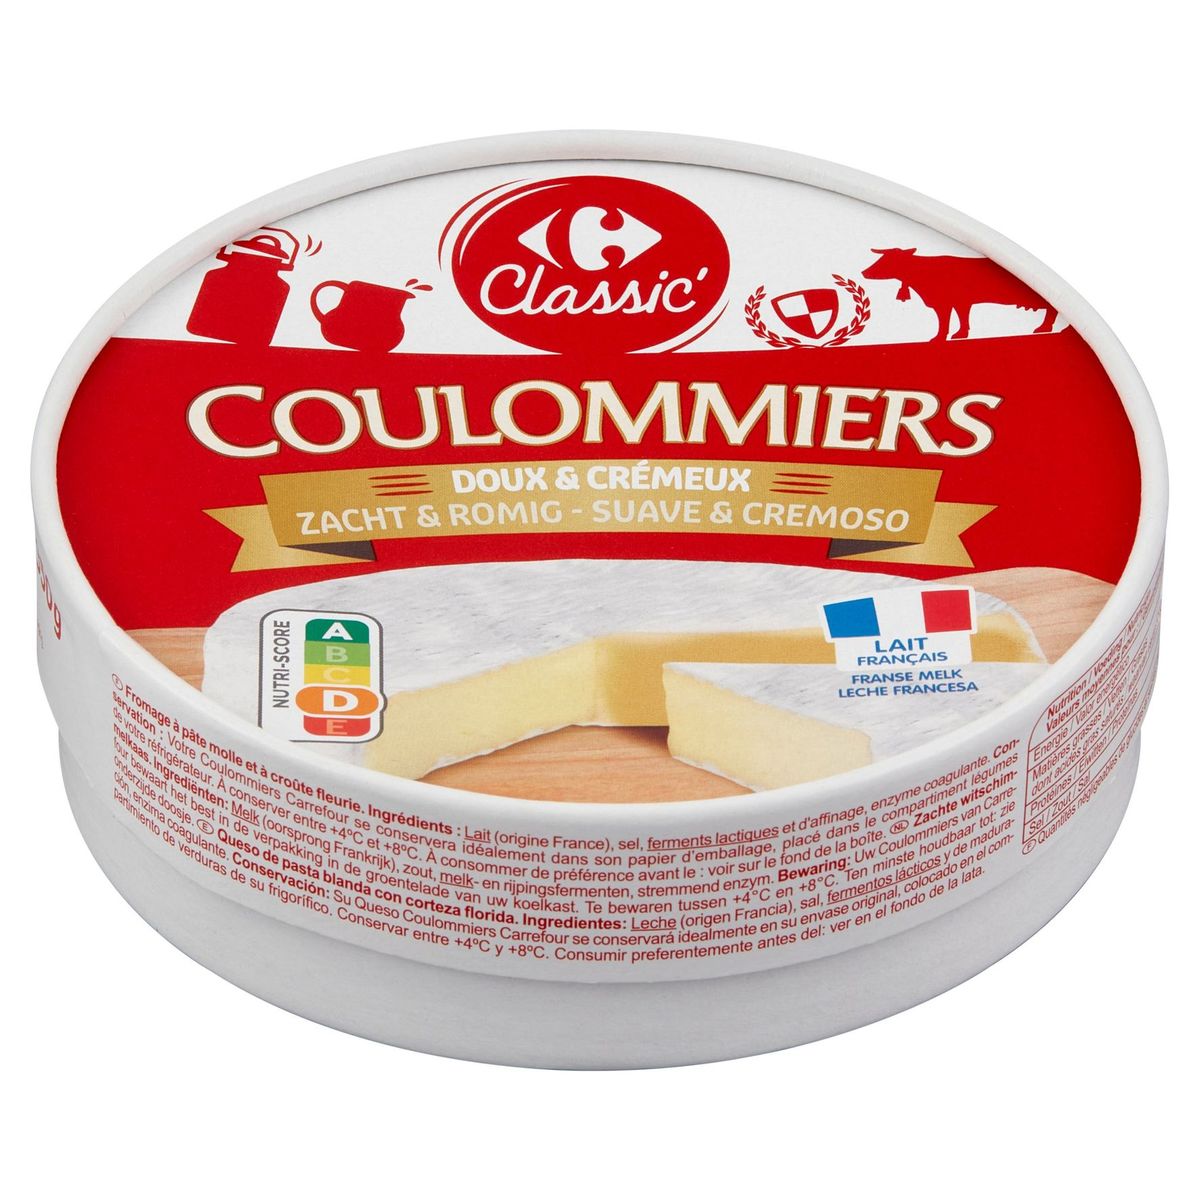 Carrefour Classic' Coulommiers Doux & Crémeux 350 g